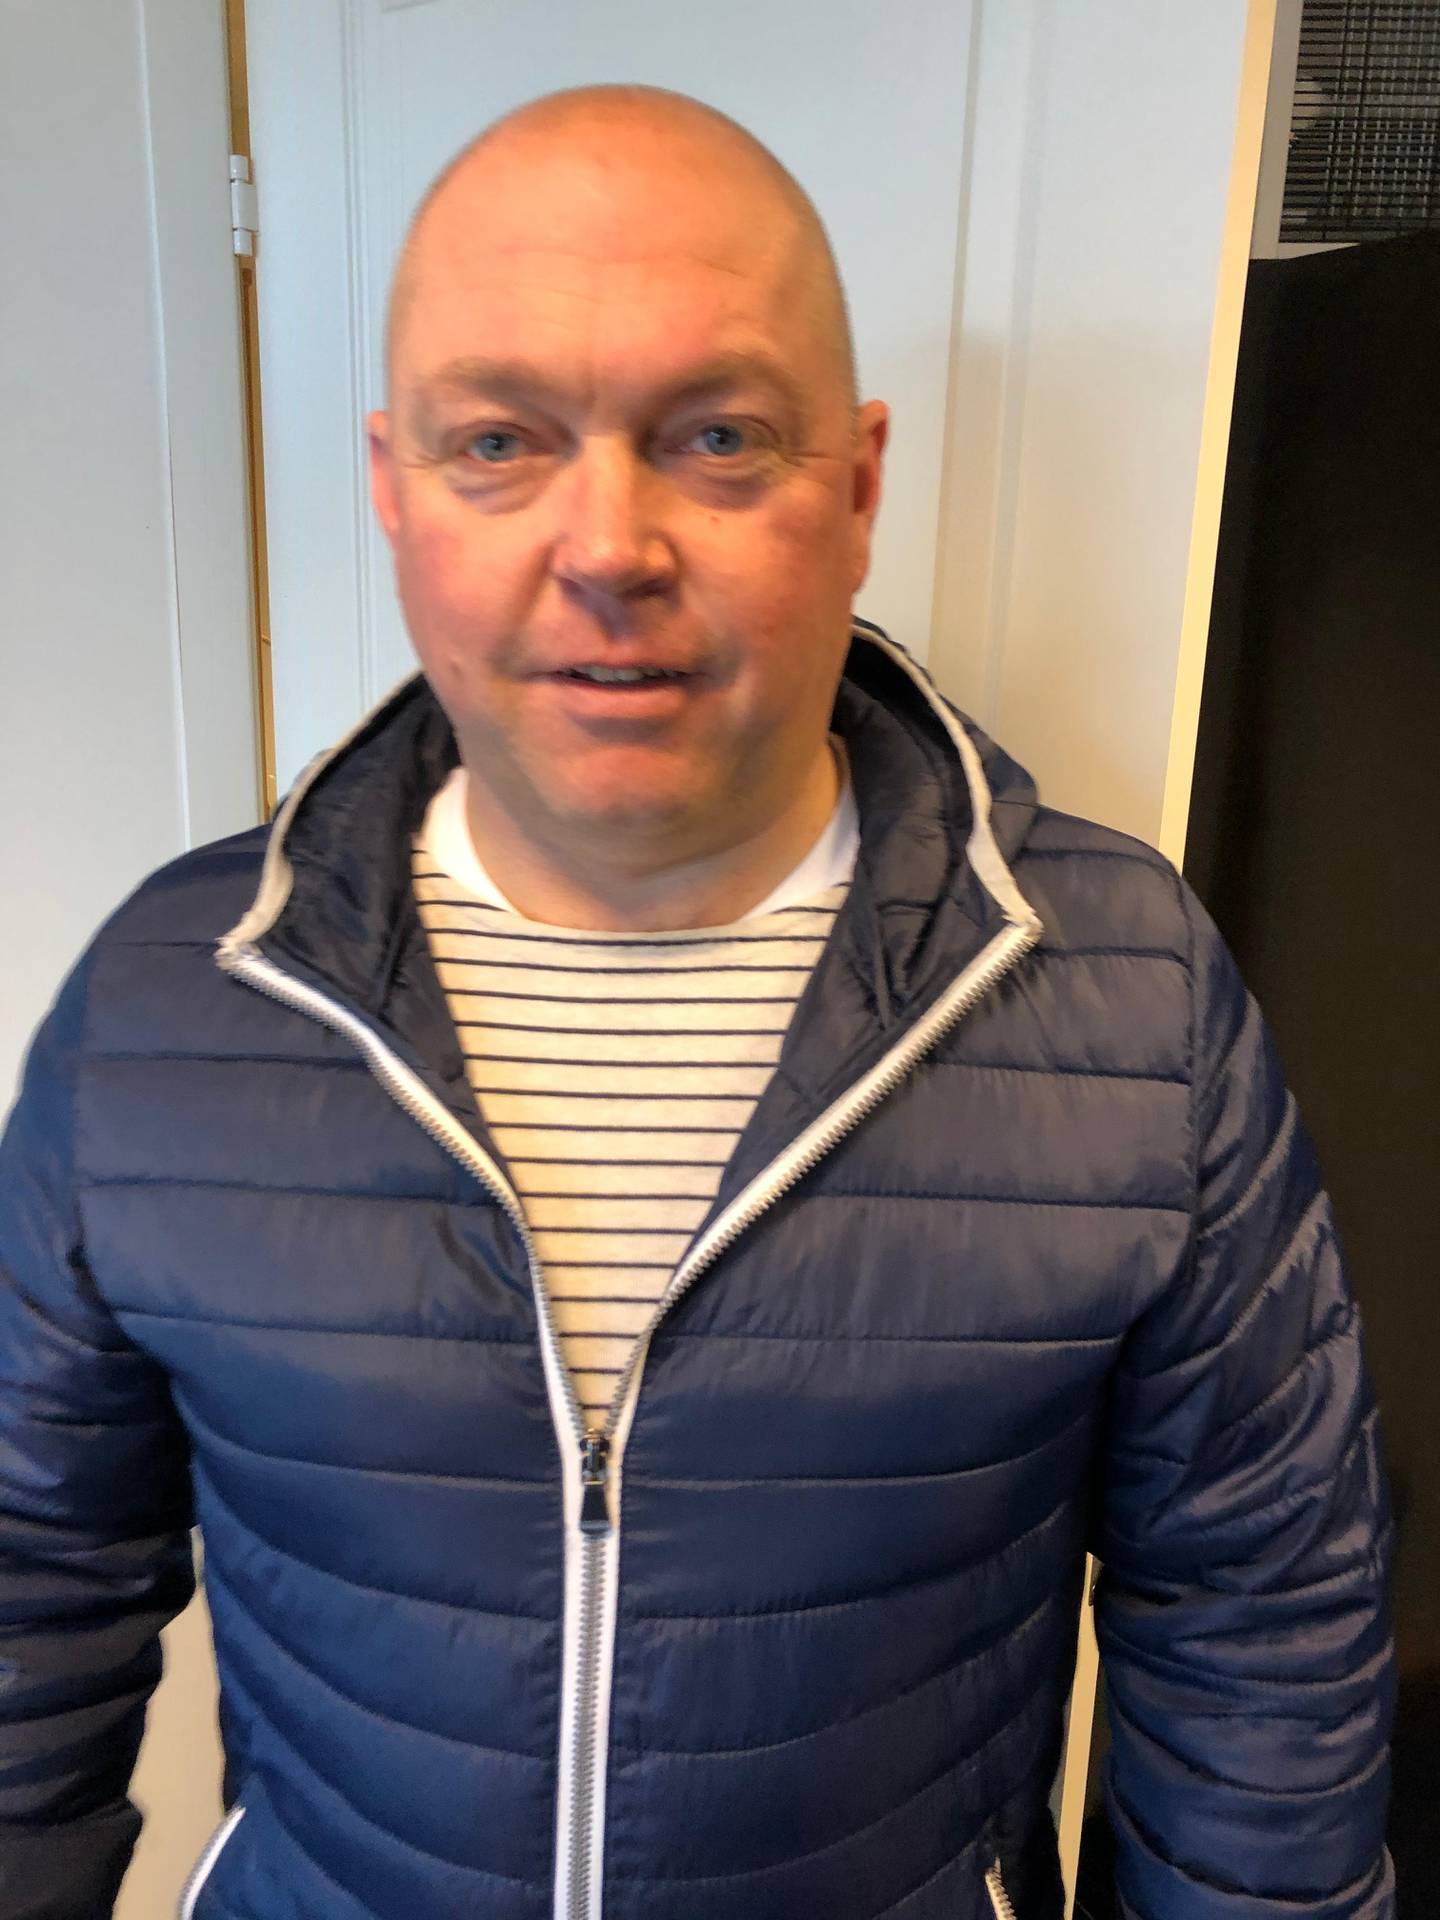 – BCC har et syn på seksualitet og homofili som ikke er forenlig med idrettens verdier, sier Anders Berge Røsjordet, leder i Larvik Turn Håndball.